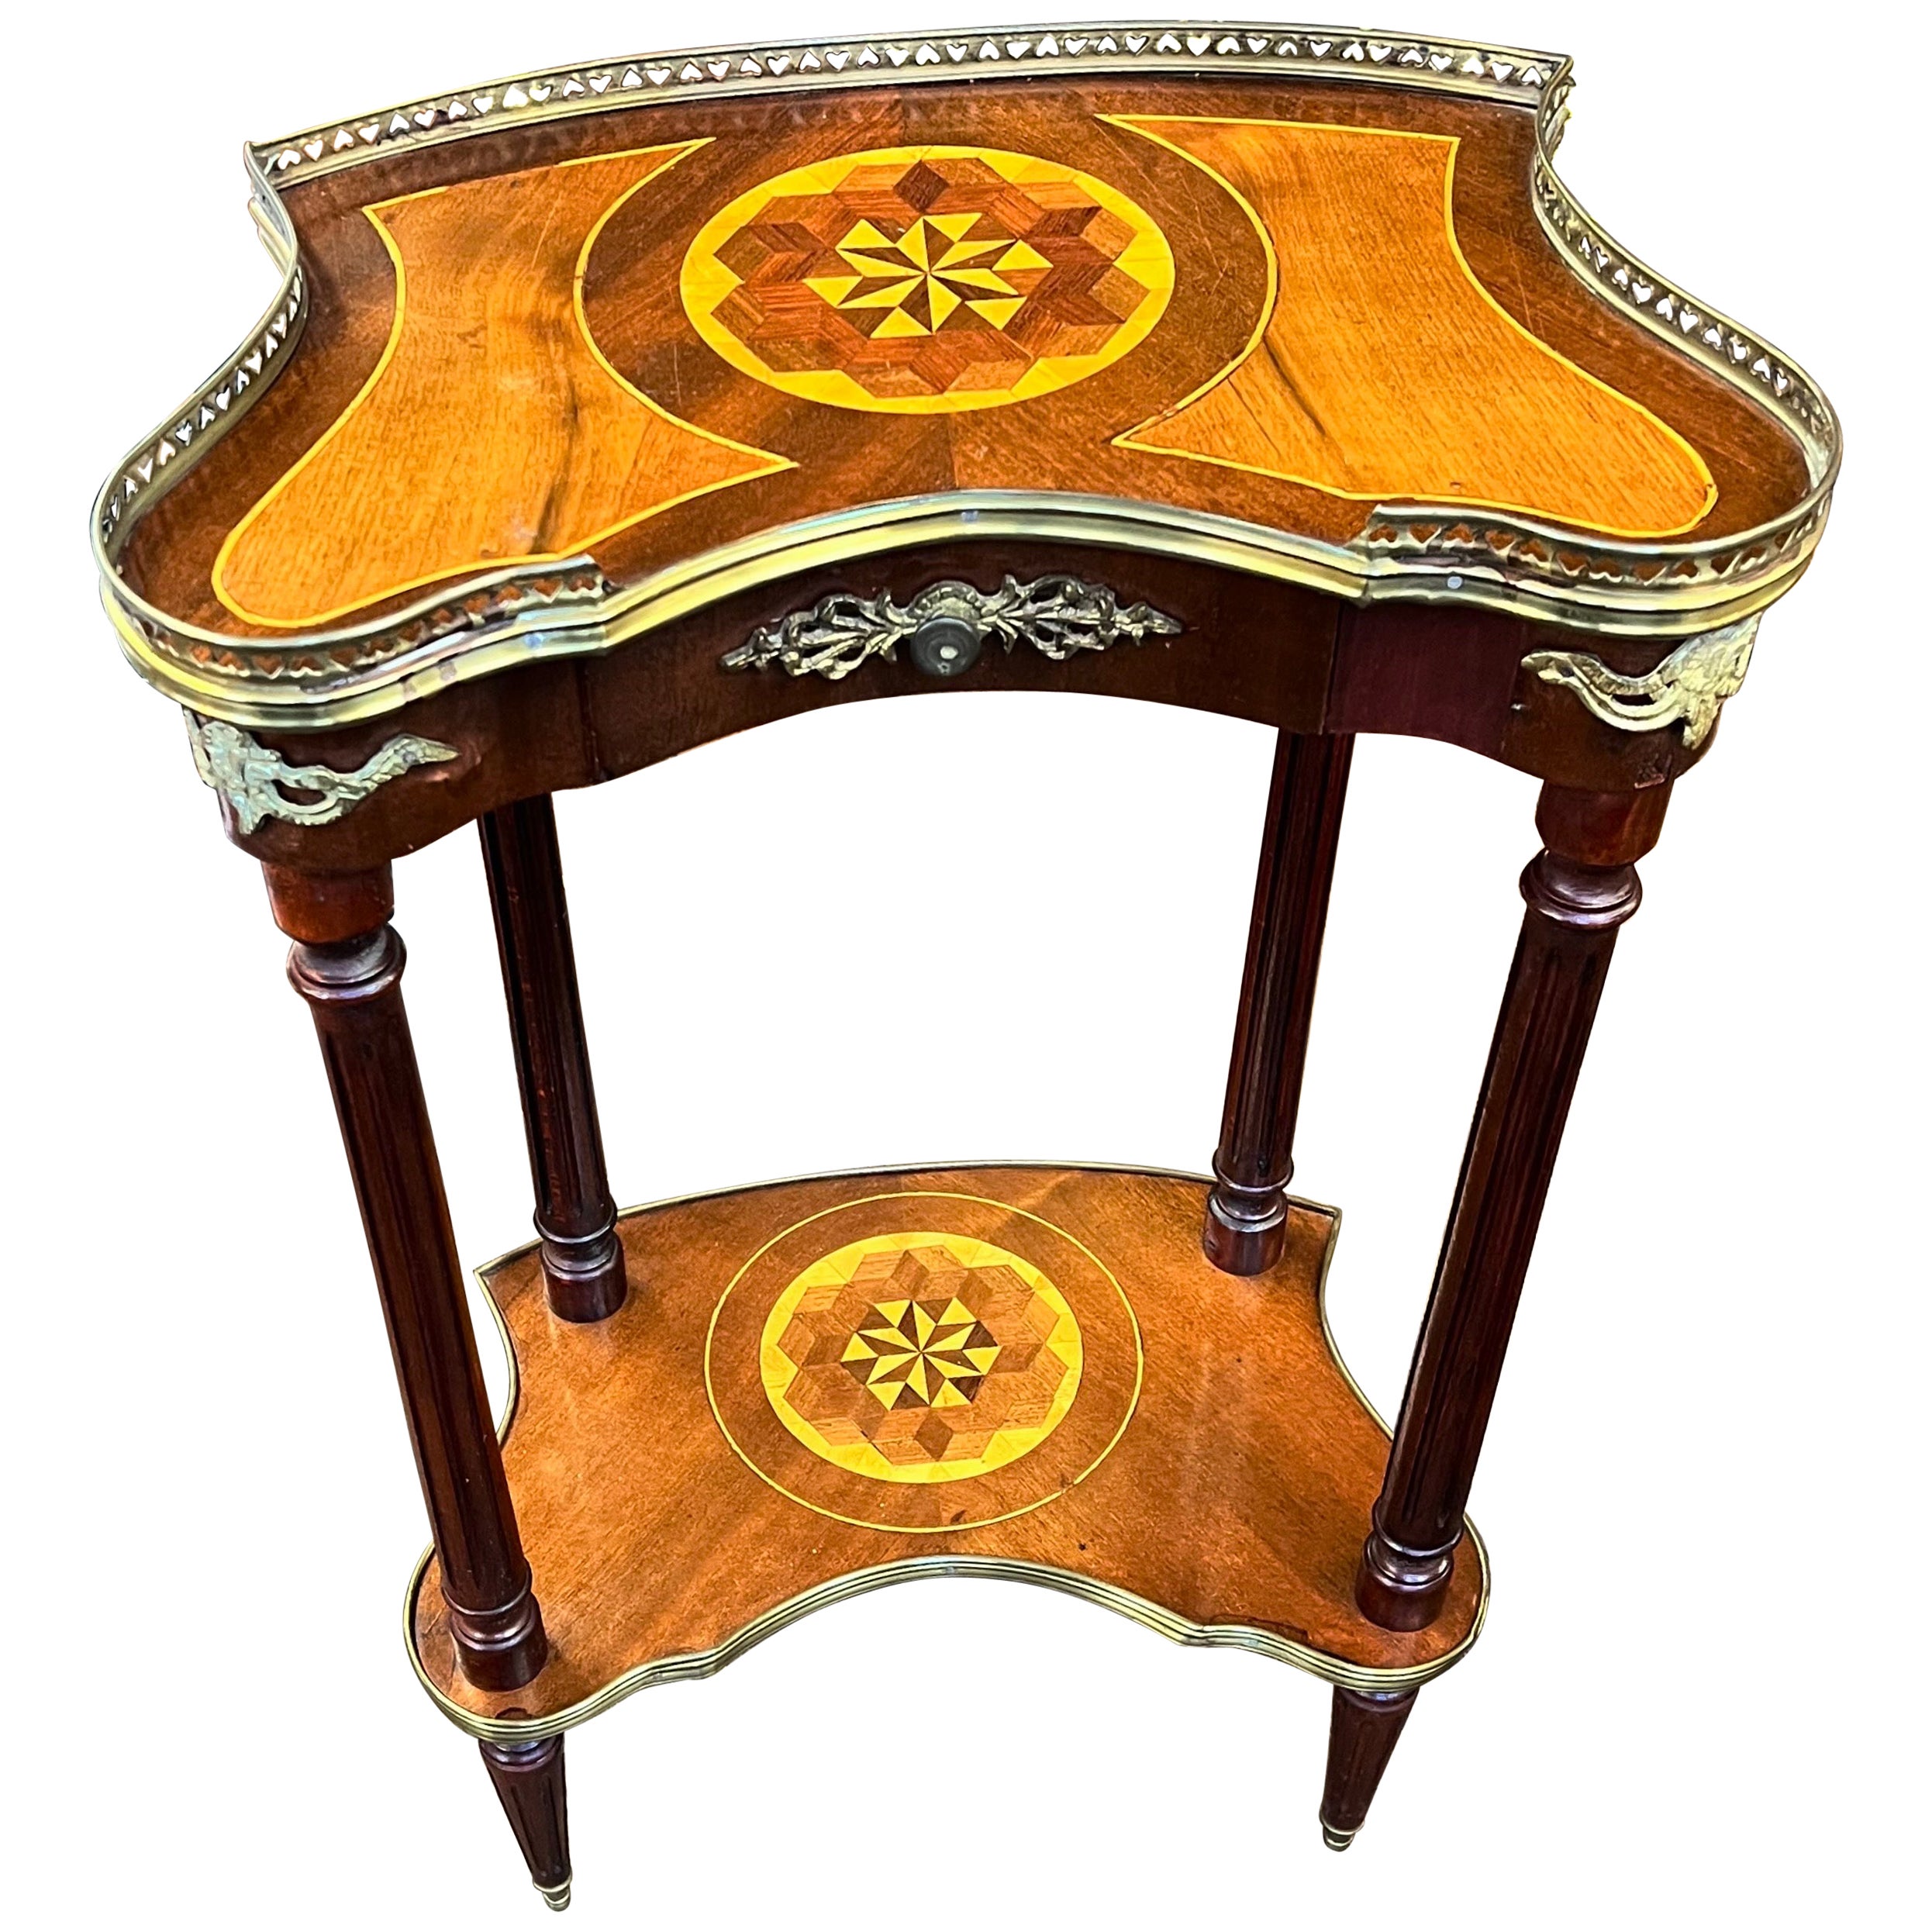 Superbe table d'appoint en forme de rein en marqueterie française ancienne et ornementation de bronze doré